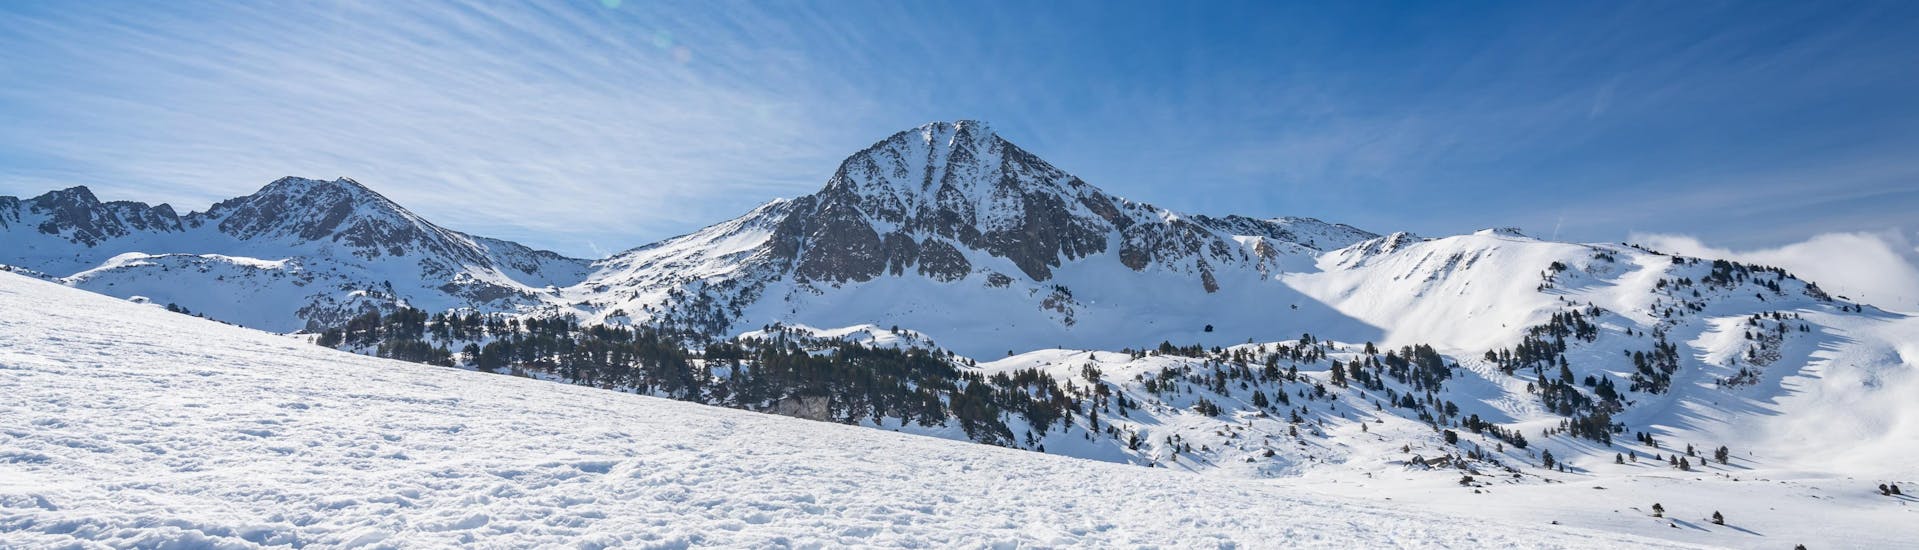 Ein Blick auf die im strahlenden Sonnenschein türmenden, schneebedeckten Bergspitzen im spanischen Baqueira, wo örtliche Skischulen allen Besuchern, die das Skifahren lernen wollen, Skikurse anbieten.